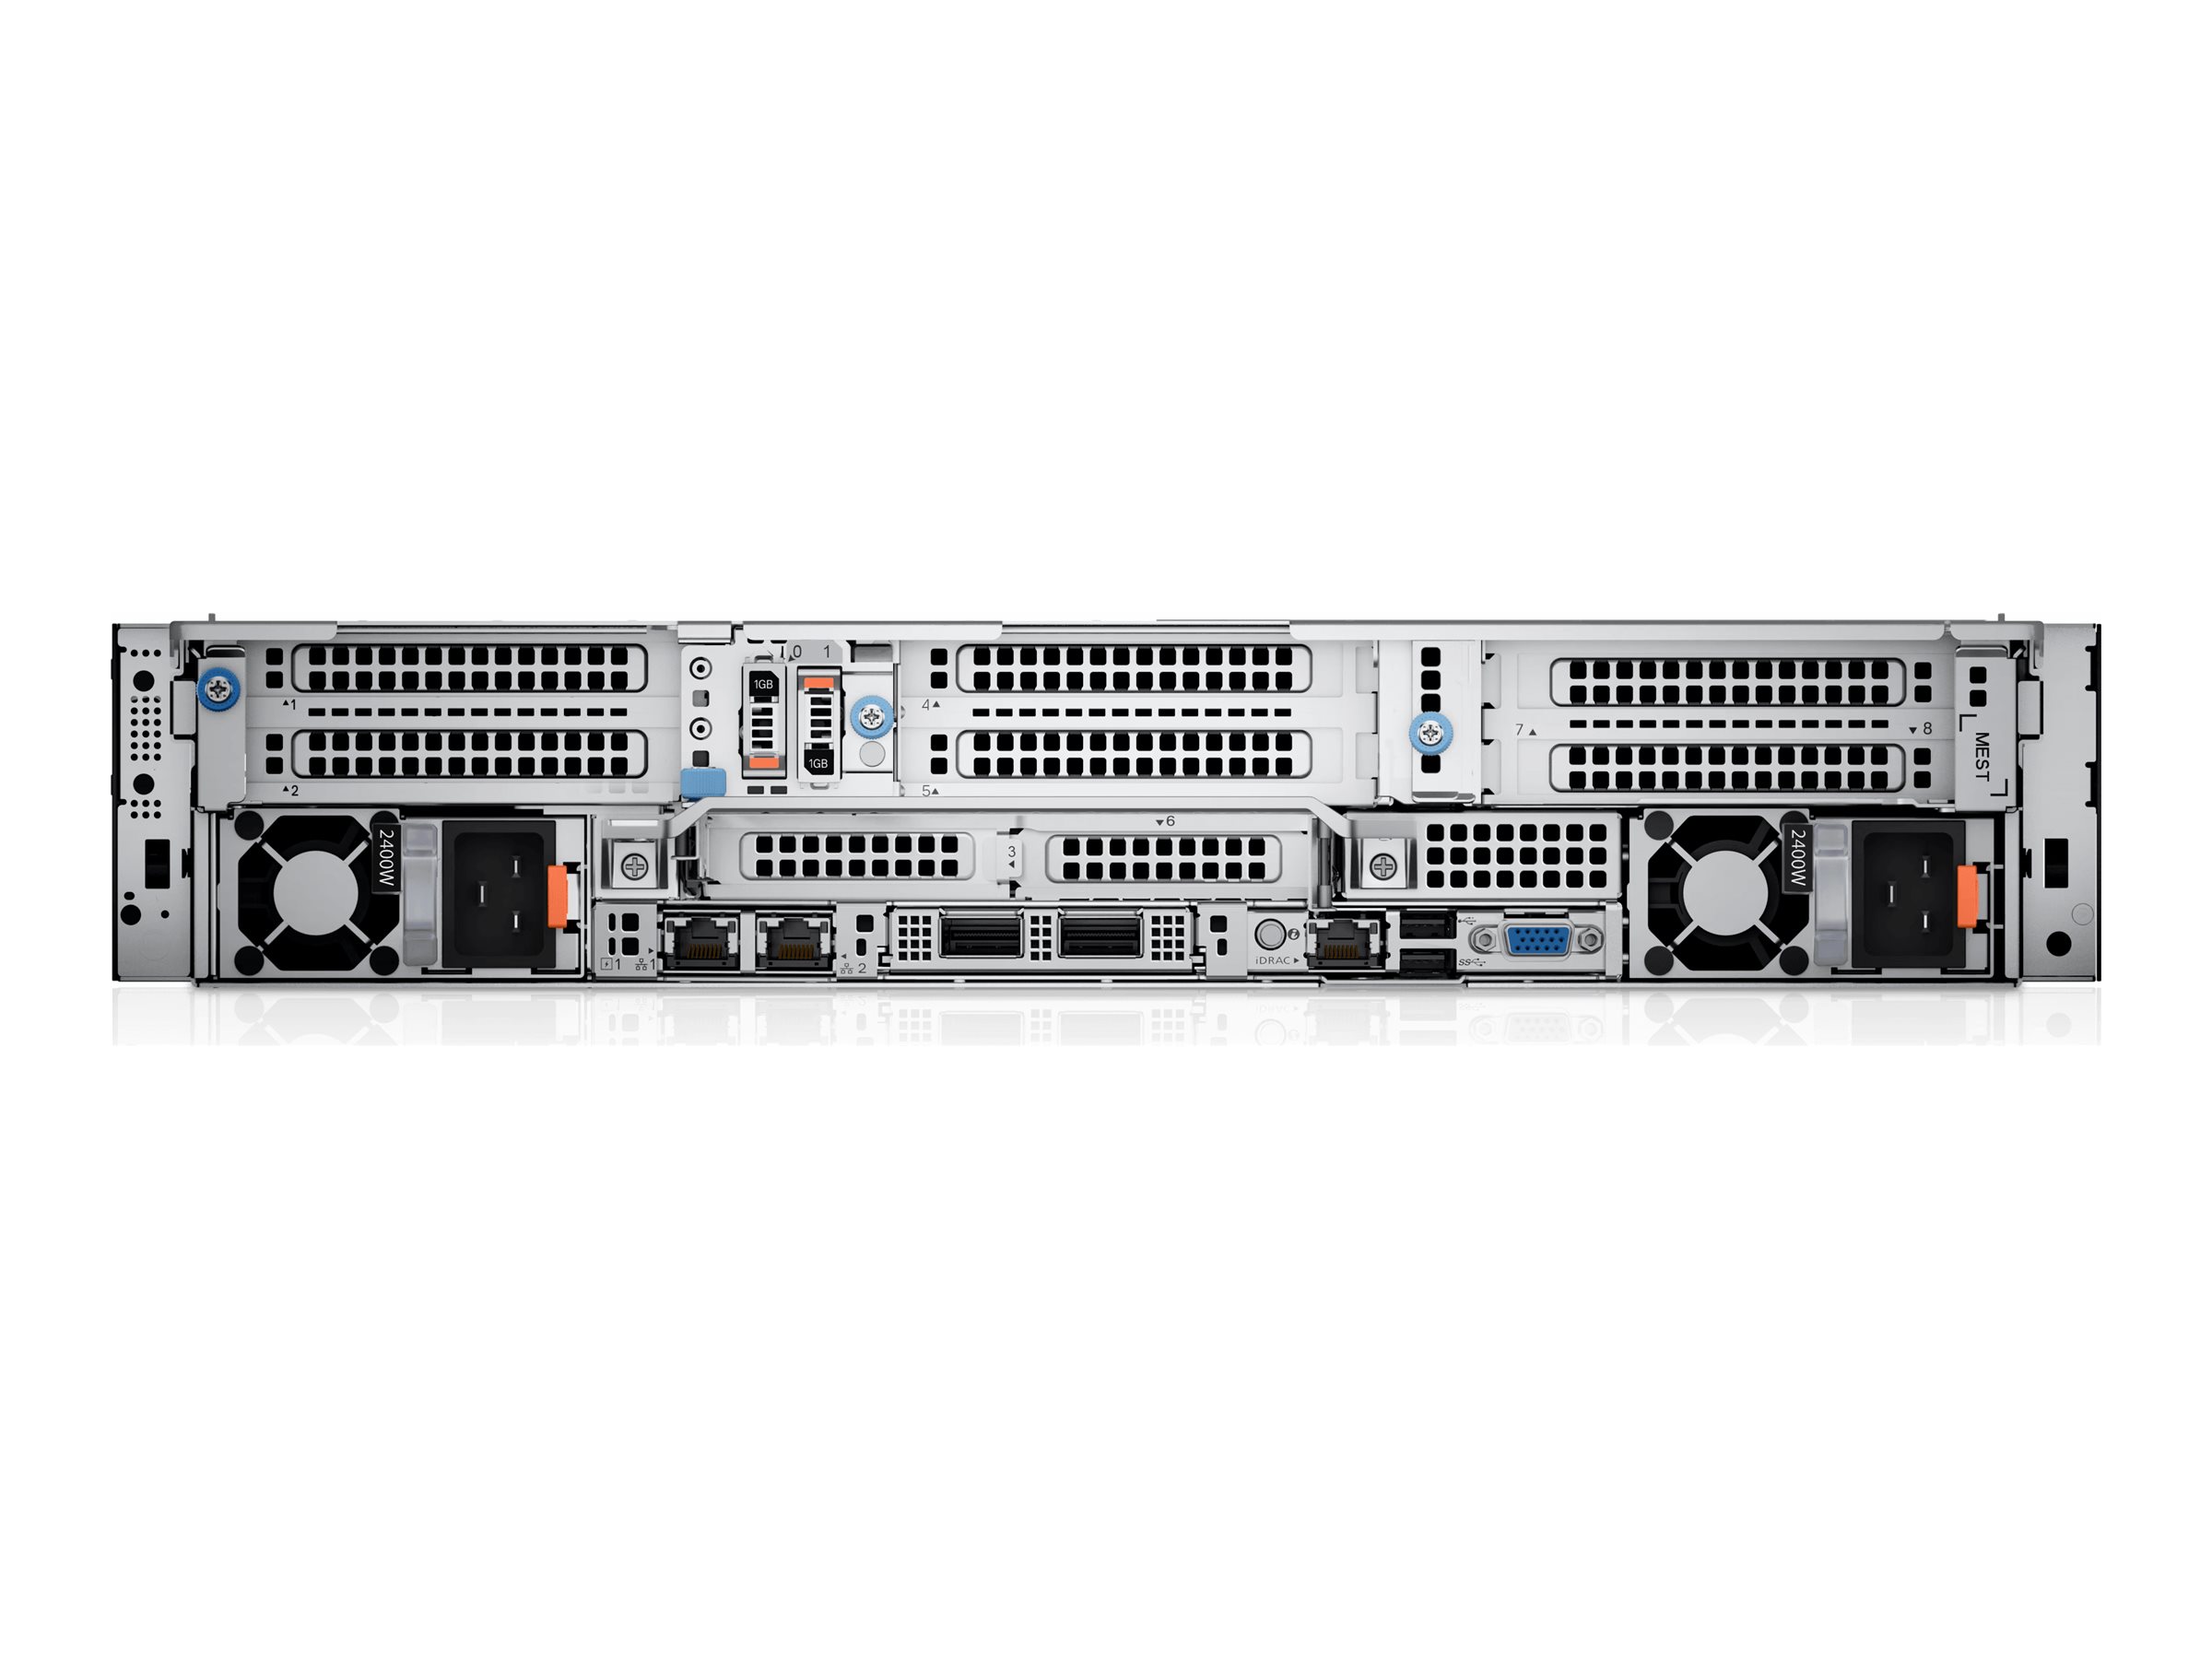 Dell PowerEdge R7615 - Serveur - Montable sur rack - 2U - 1 voie - 1 x EPYC 9354P / jusqu'à 3.8 GHz - RAM 32 Go - SAS - hot-swap 2.5" baie(s) - SSD 480 Go - Matrox G200 - Gigabit Ethernet - Aucun SE fourni - moniteur : aucun - noir - BTP - Dell Smart Selection, Dell Smart Value - avec 3 ans de support de base avec service sur place le jour ouvrable suivant - 925DG - Serveurs rack